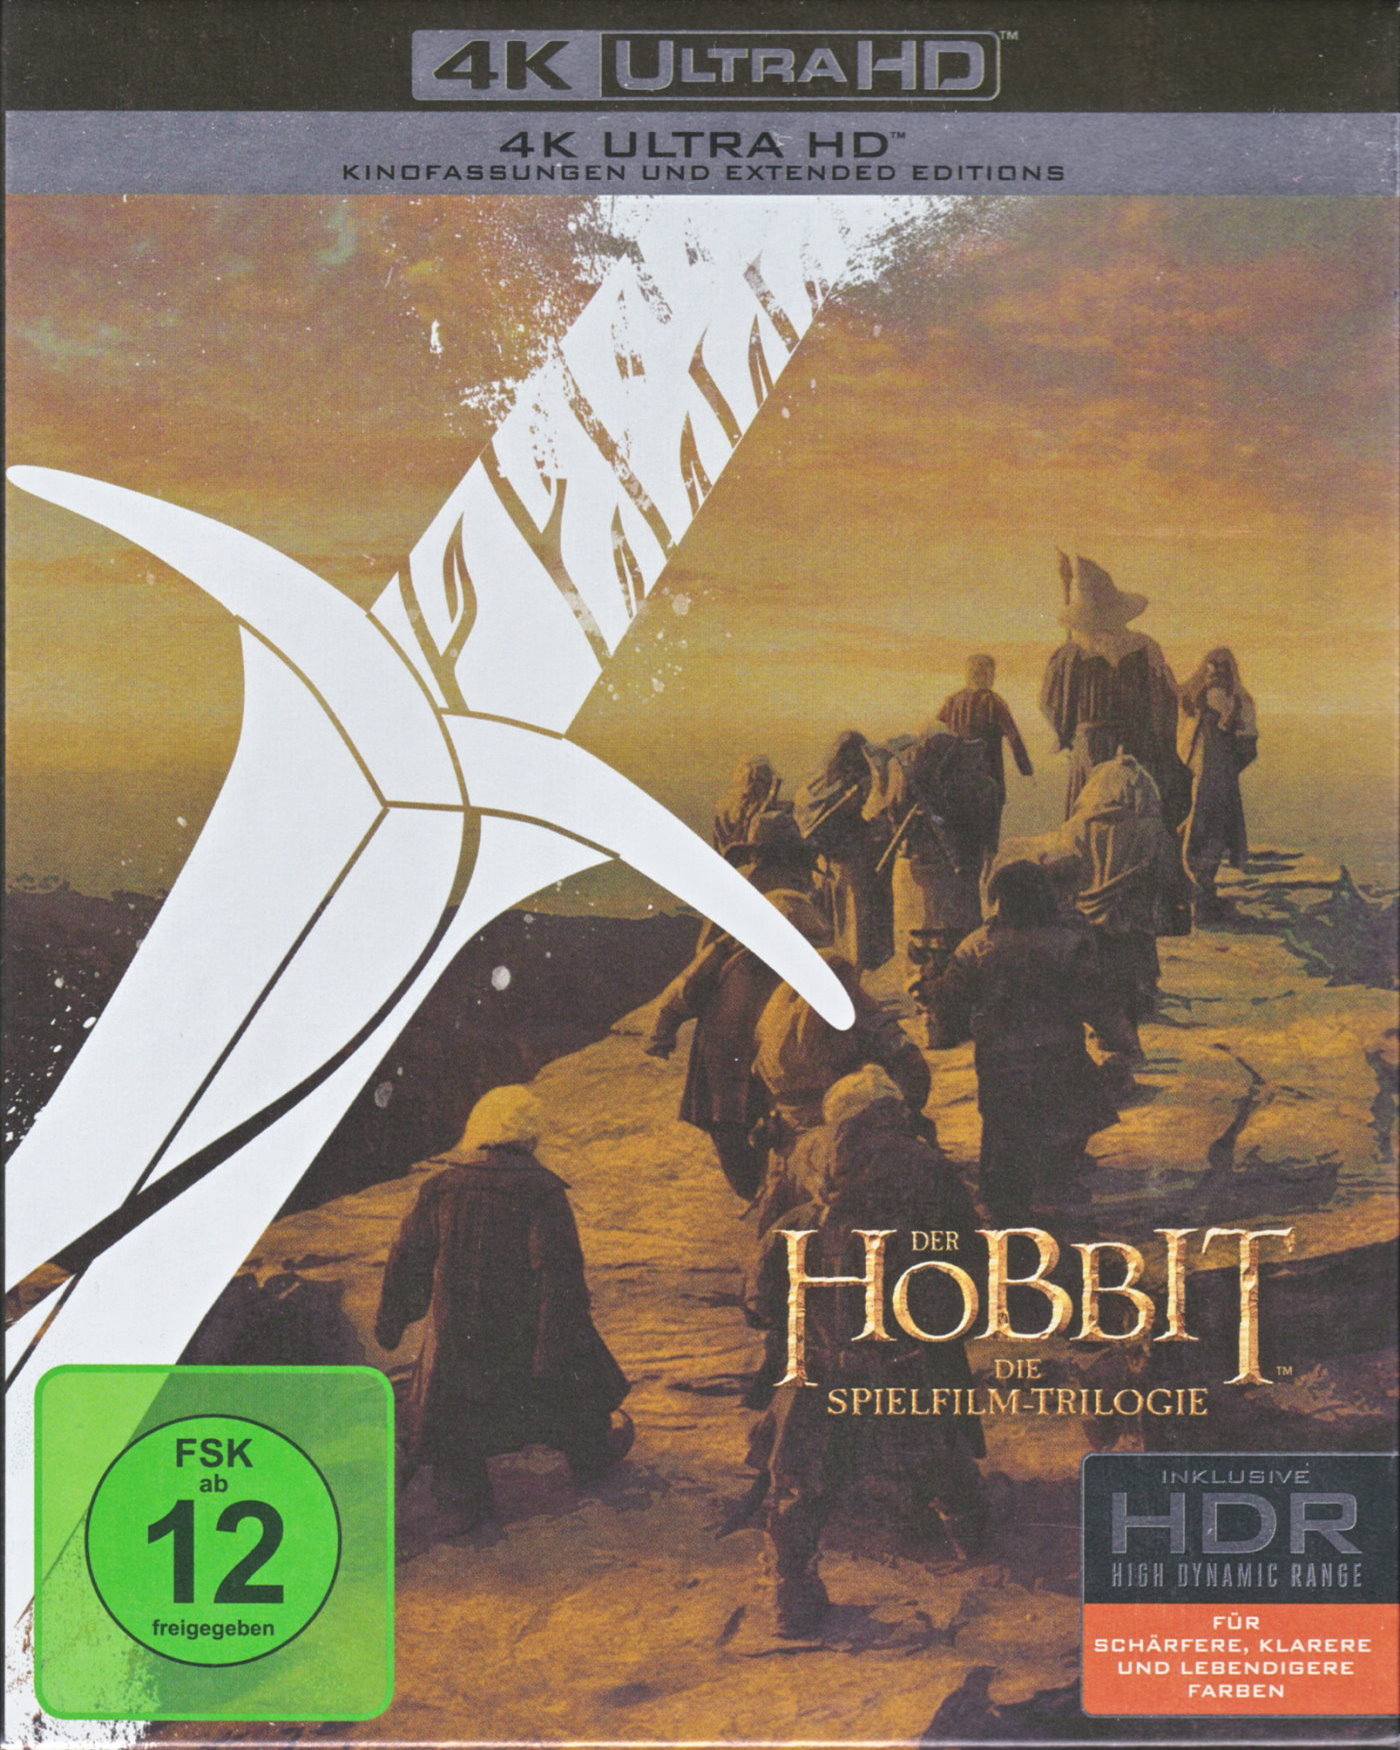 Cover - Der Hobbit - Smaugs Einöde.jpg